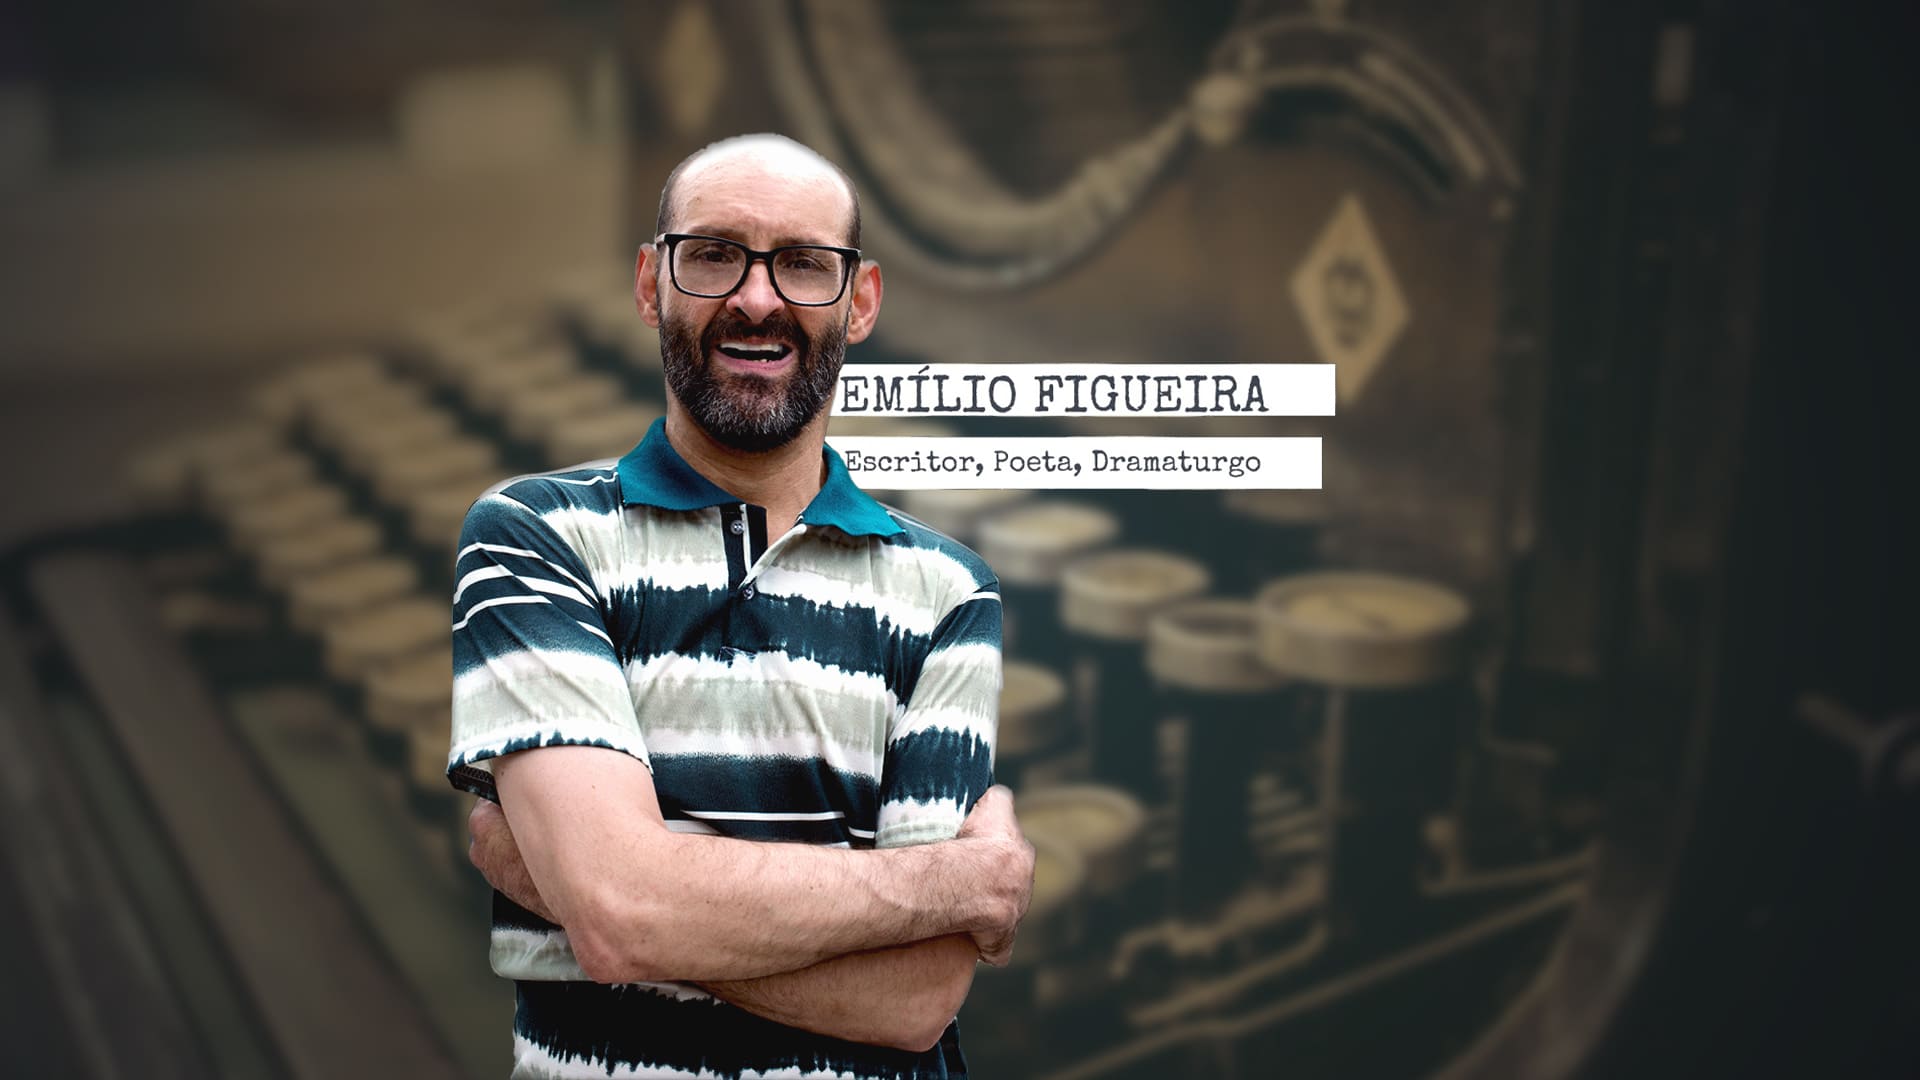 Fotografia de Emílio Figueira, escritor, poeta, dramaturgo, com descrição na legenda de "Emílio Figueira lança Ventos nas Velas em versão digital".